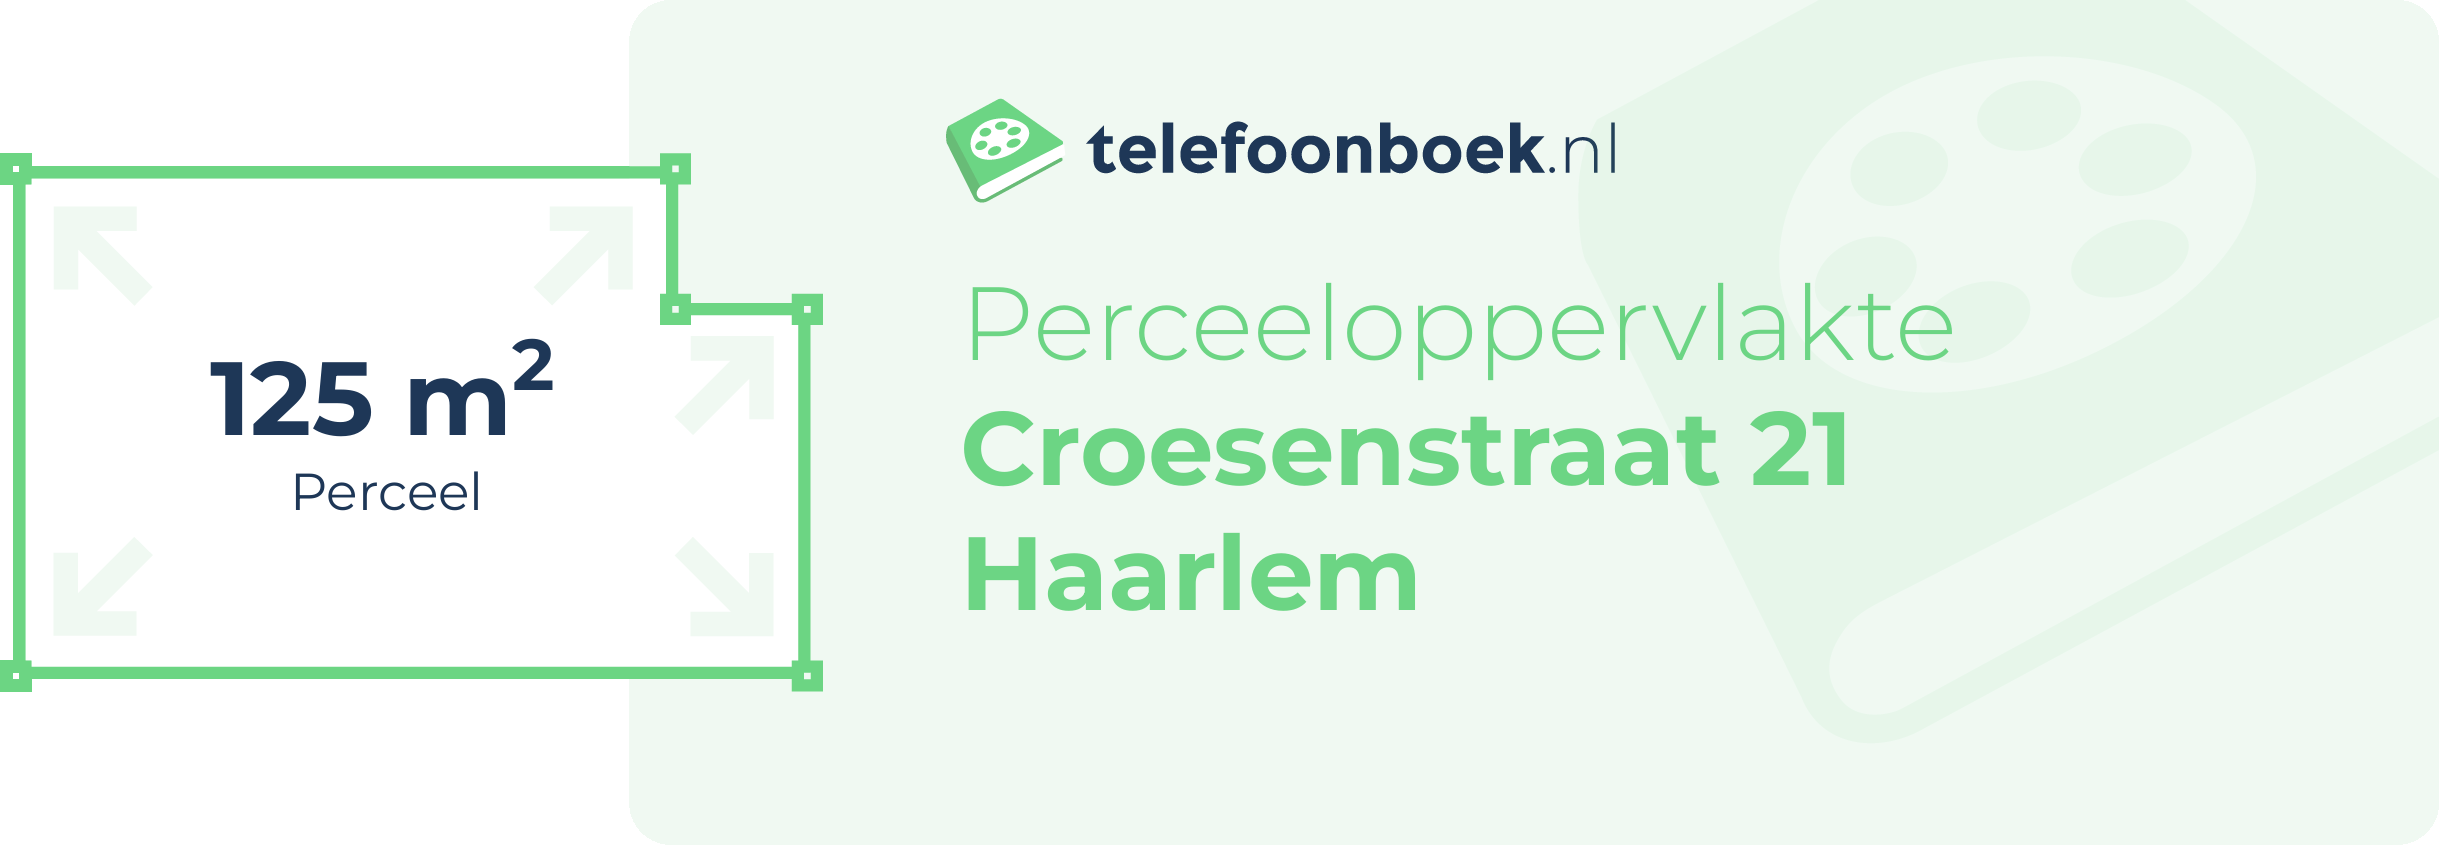 Perceeloppervlakte Croesenstraat 21 Haarlem